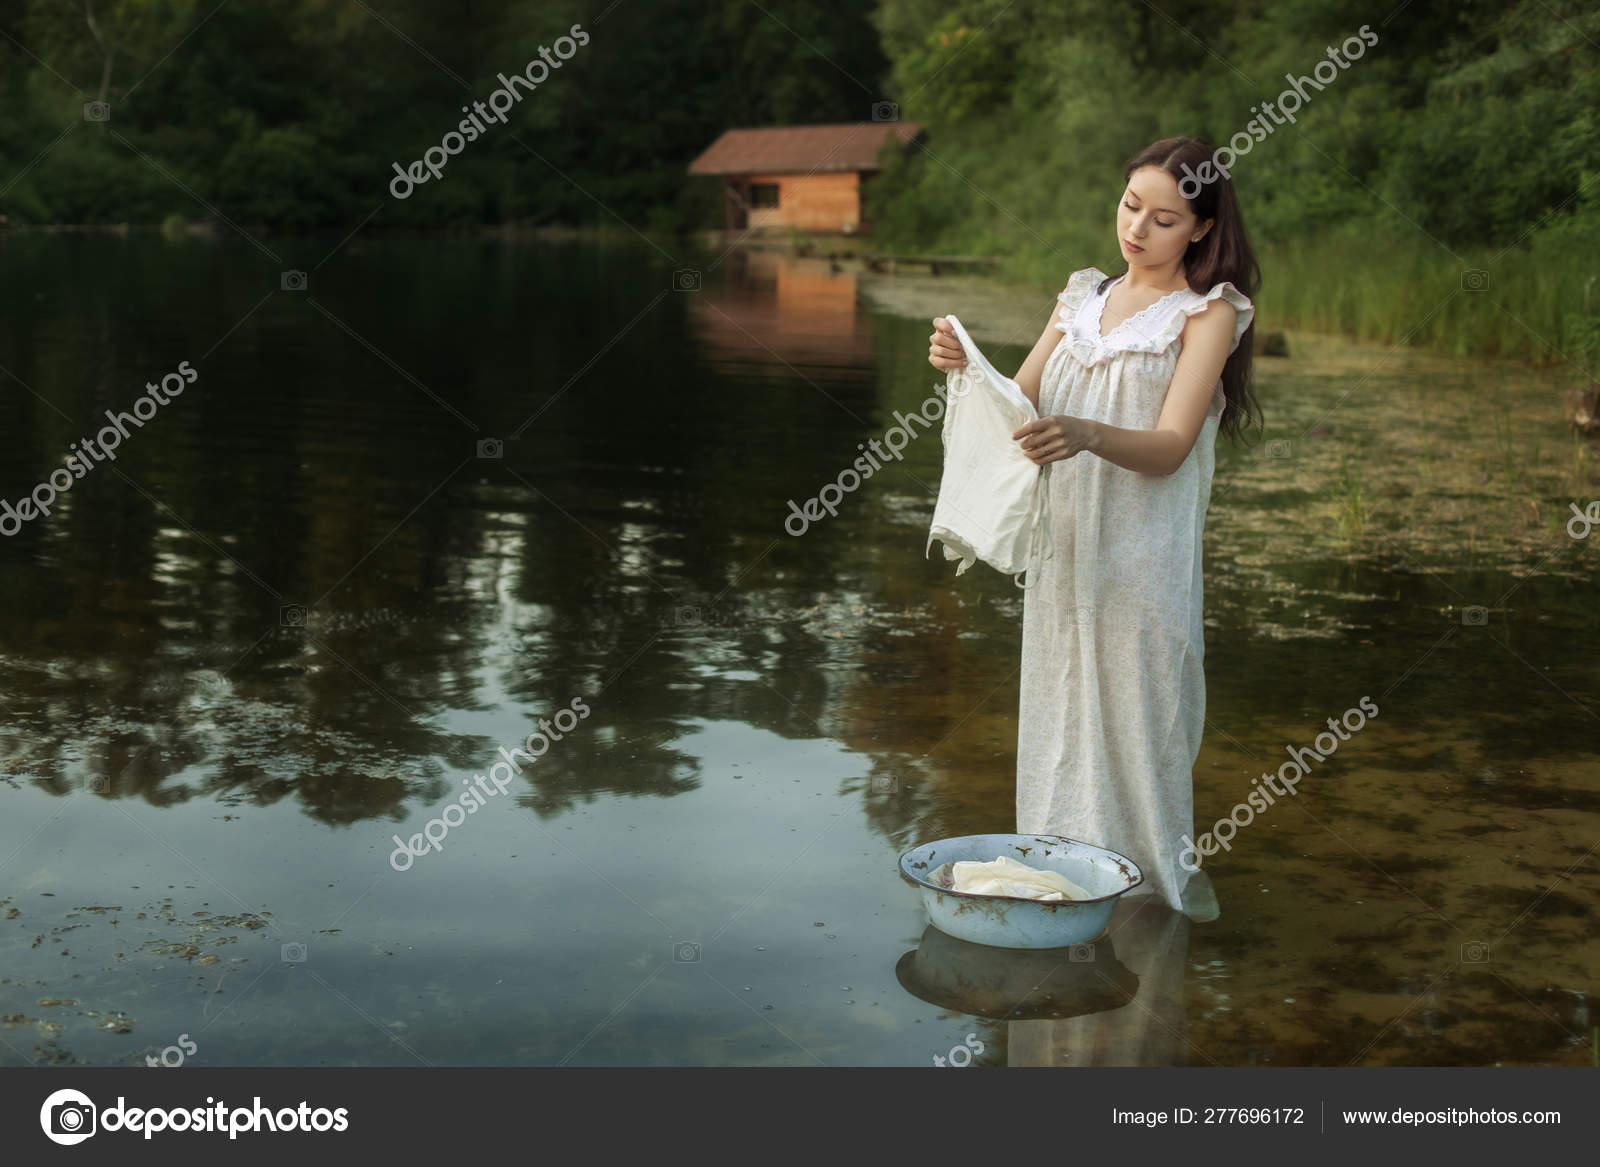 Песня мы белье стирали. Стирка белья на речке. Девушка стирает в реке. Фотосессия стирка на реке. Стирка белья в реке.